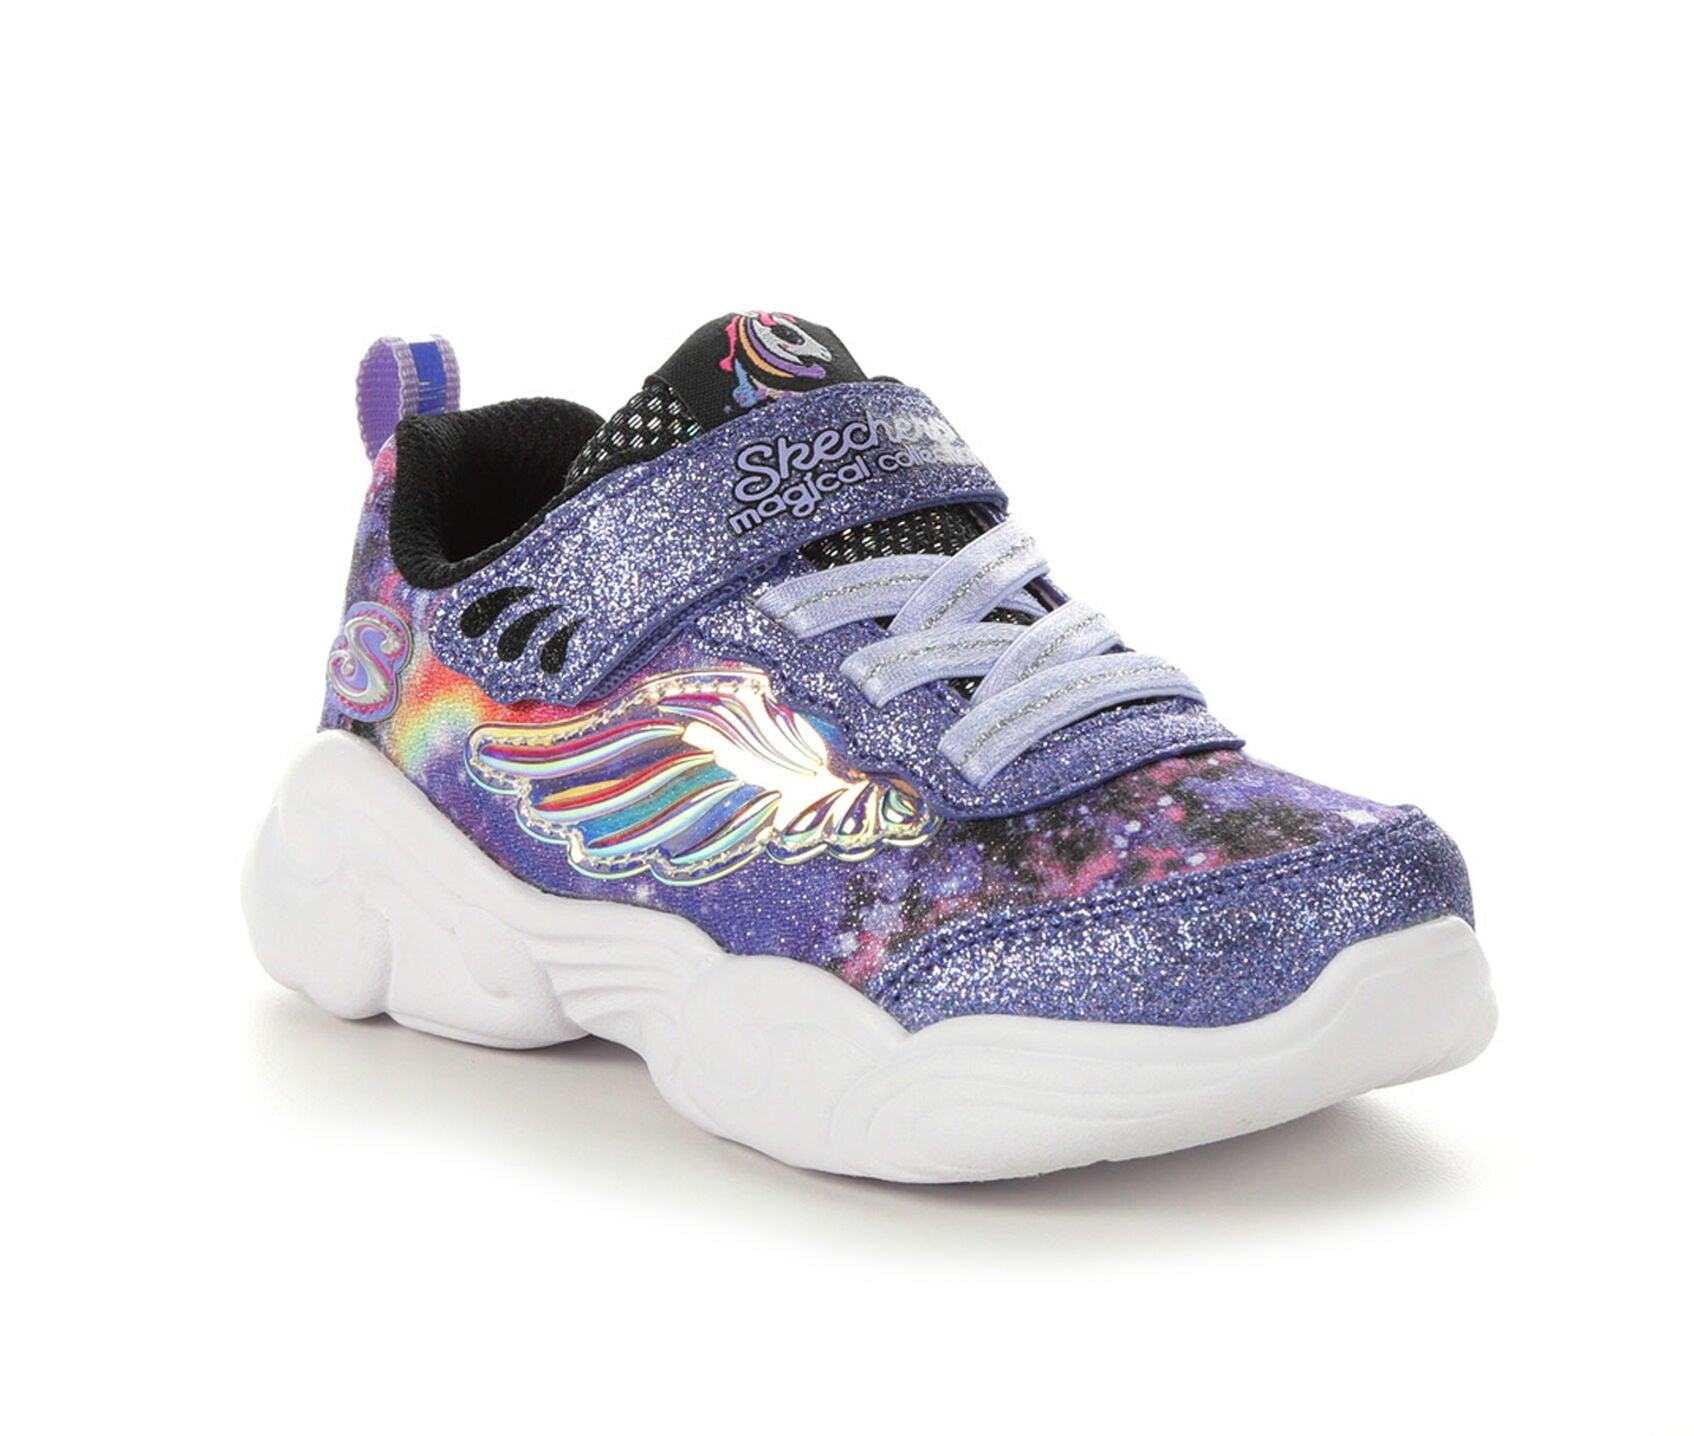 SKECHERS Unicorn Girl Shoes for Girls Sizes 2T-5T | Mercari